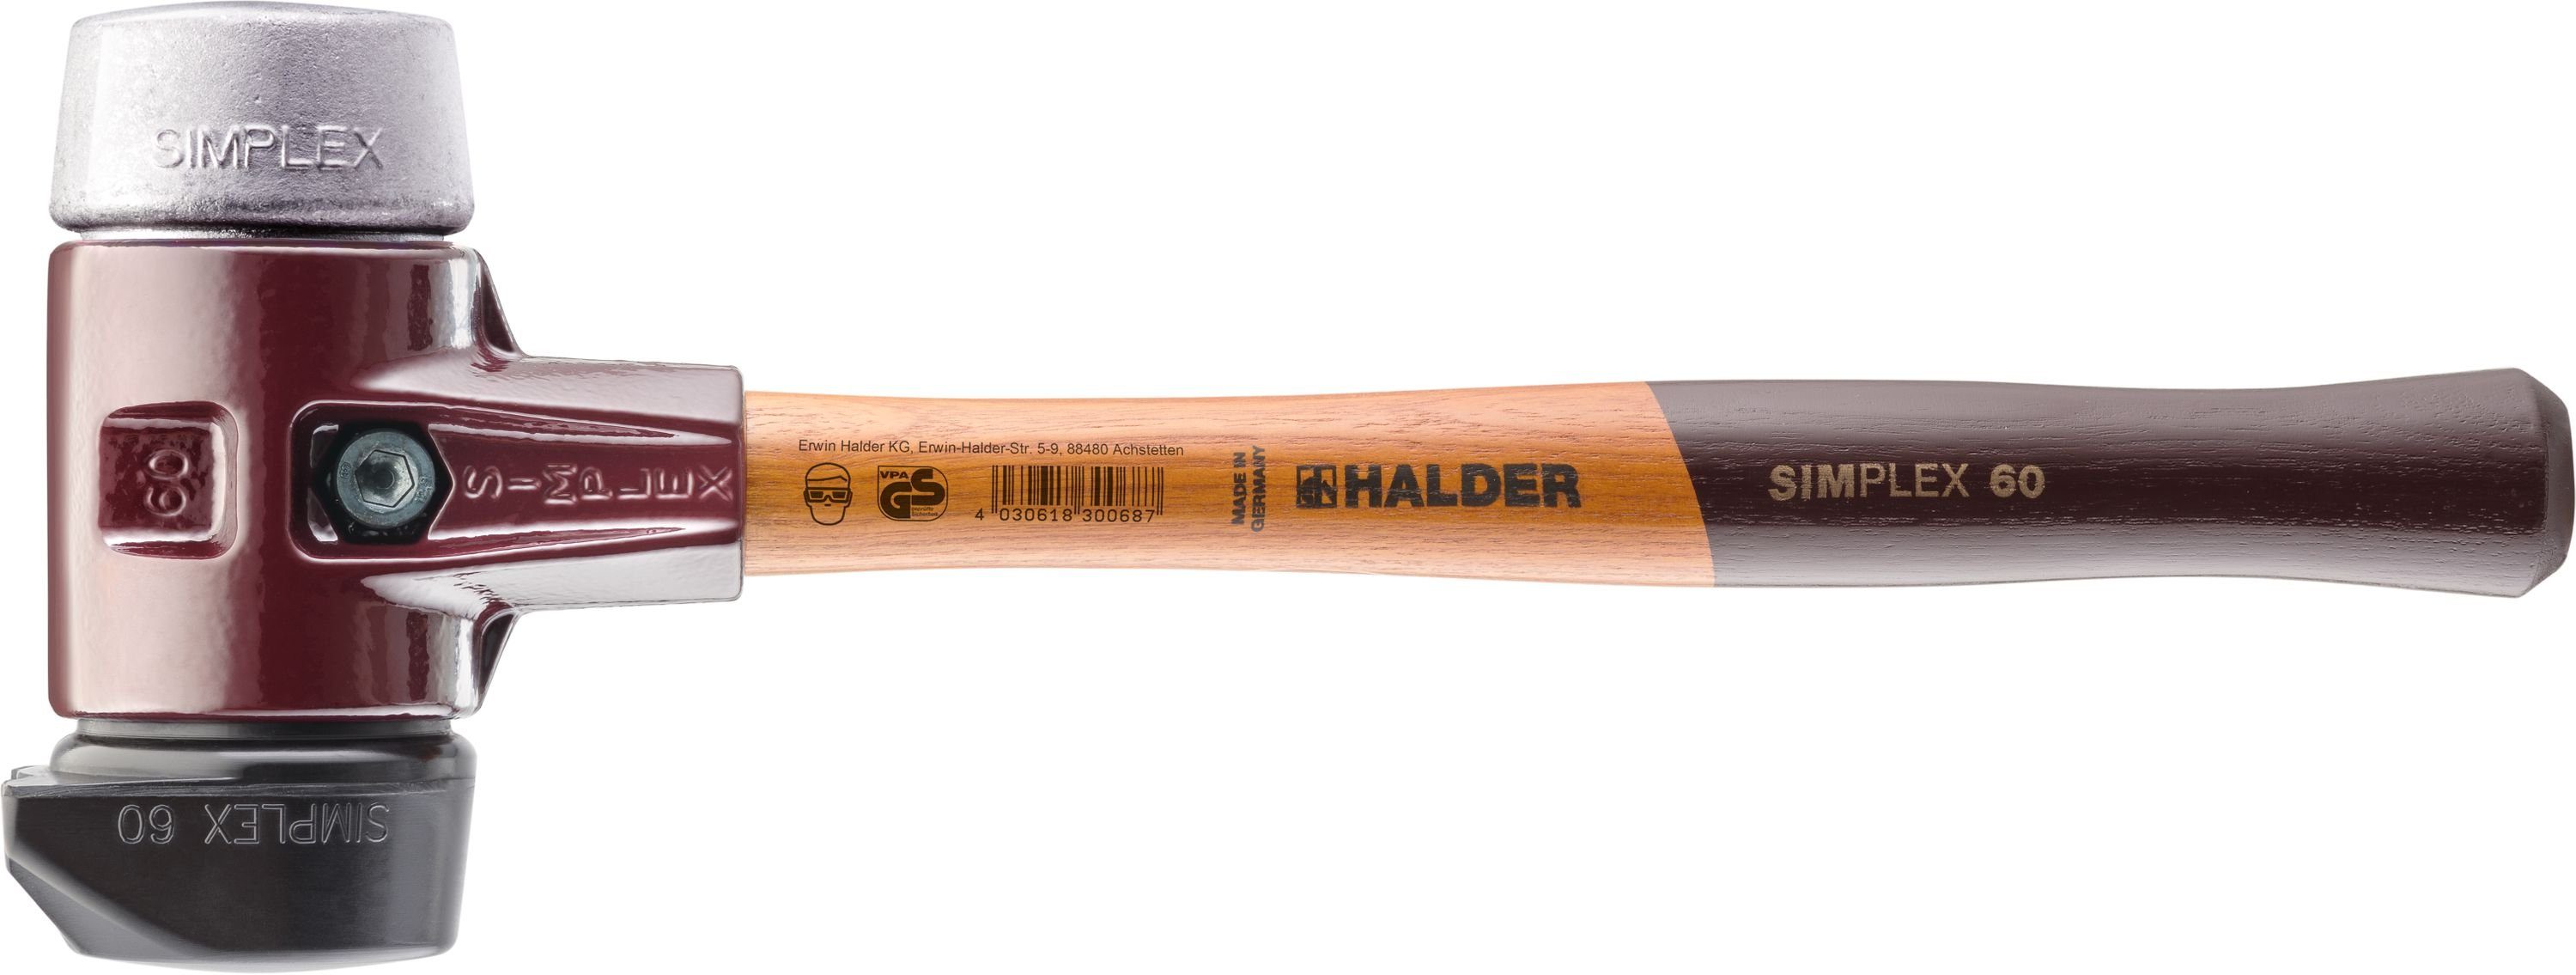 Halder KG Hammer Halder Simplex-Schonhammer 60mm mit Standfuß und 2 Schlageinsätzen Gummi mittelhart & Weichmetall hart - 3029.260